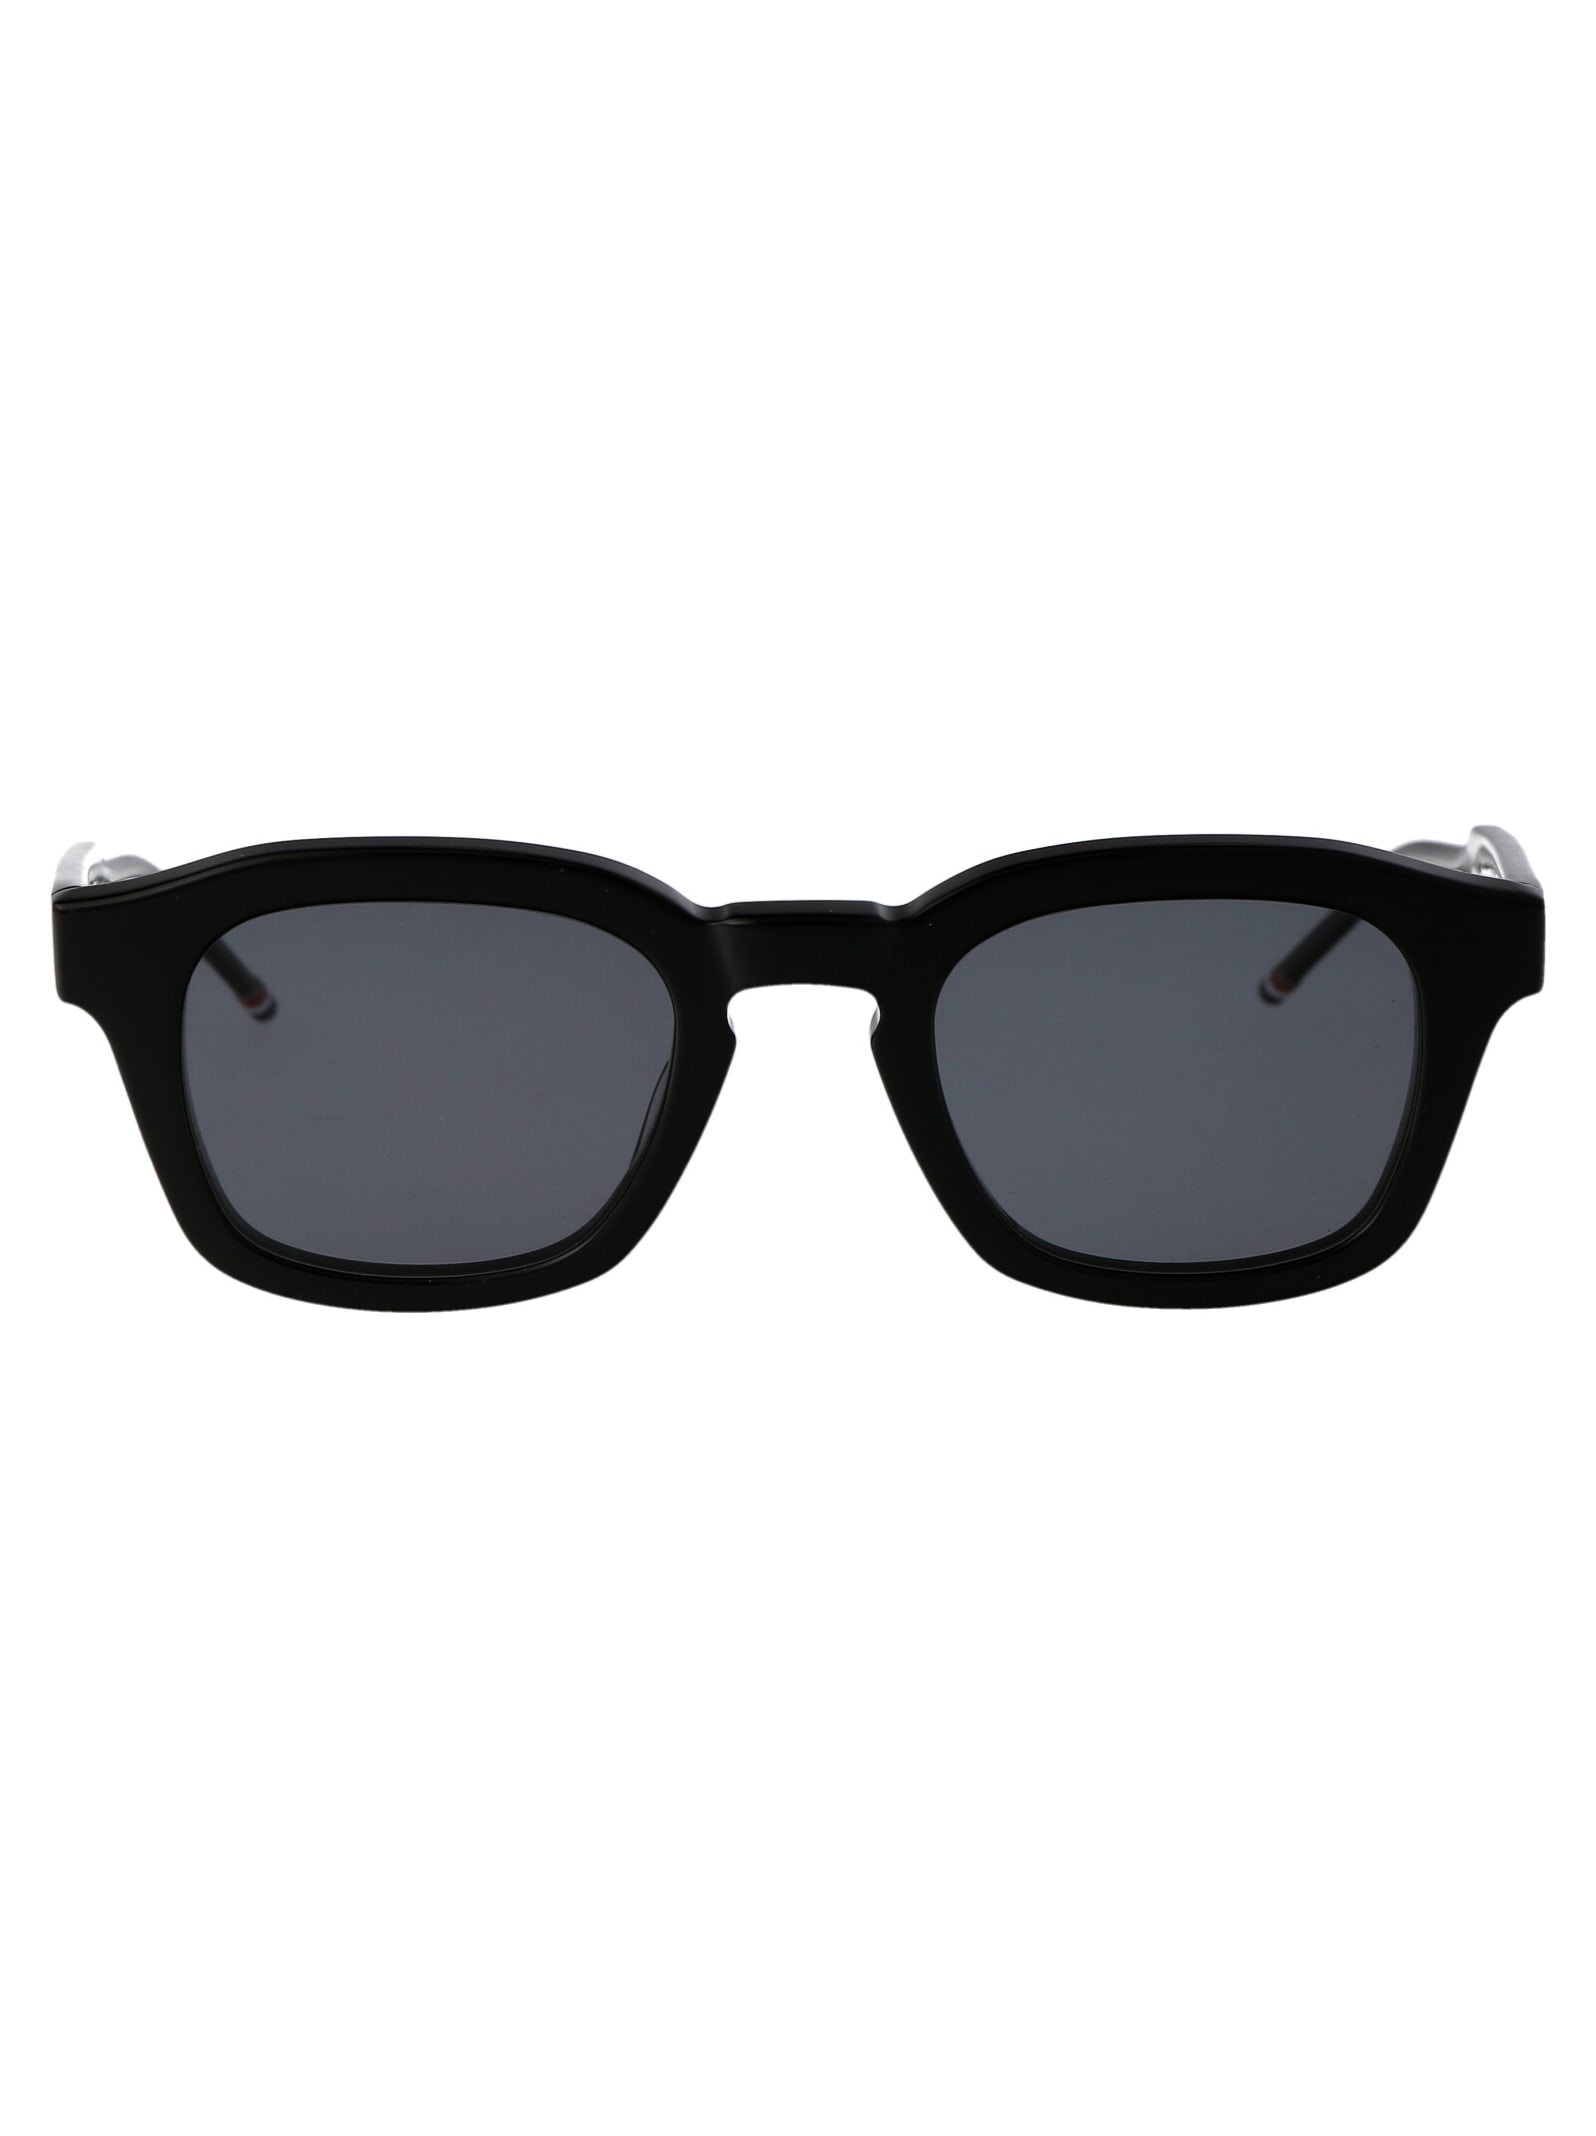 Ues412a-g0002-001-48 Sunglasses